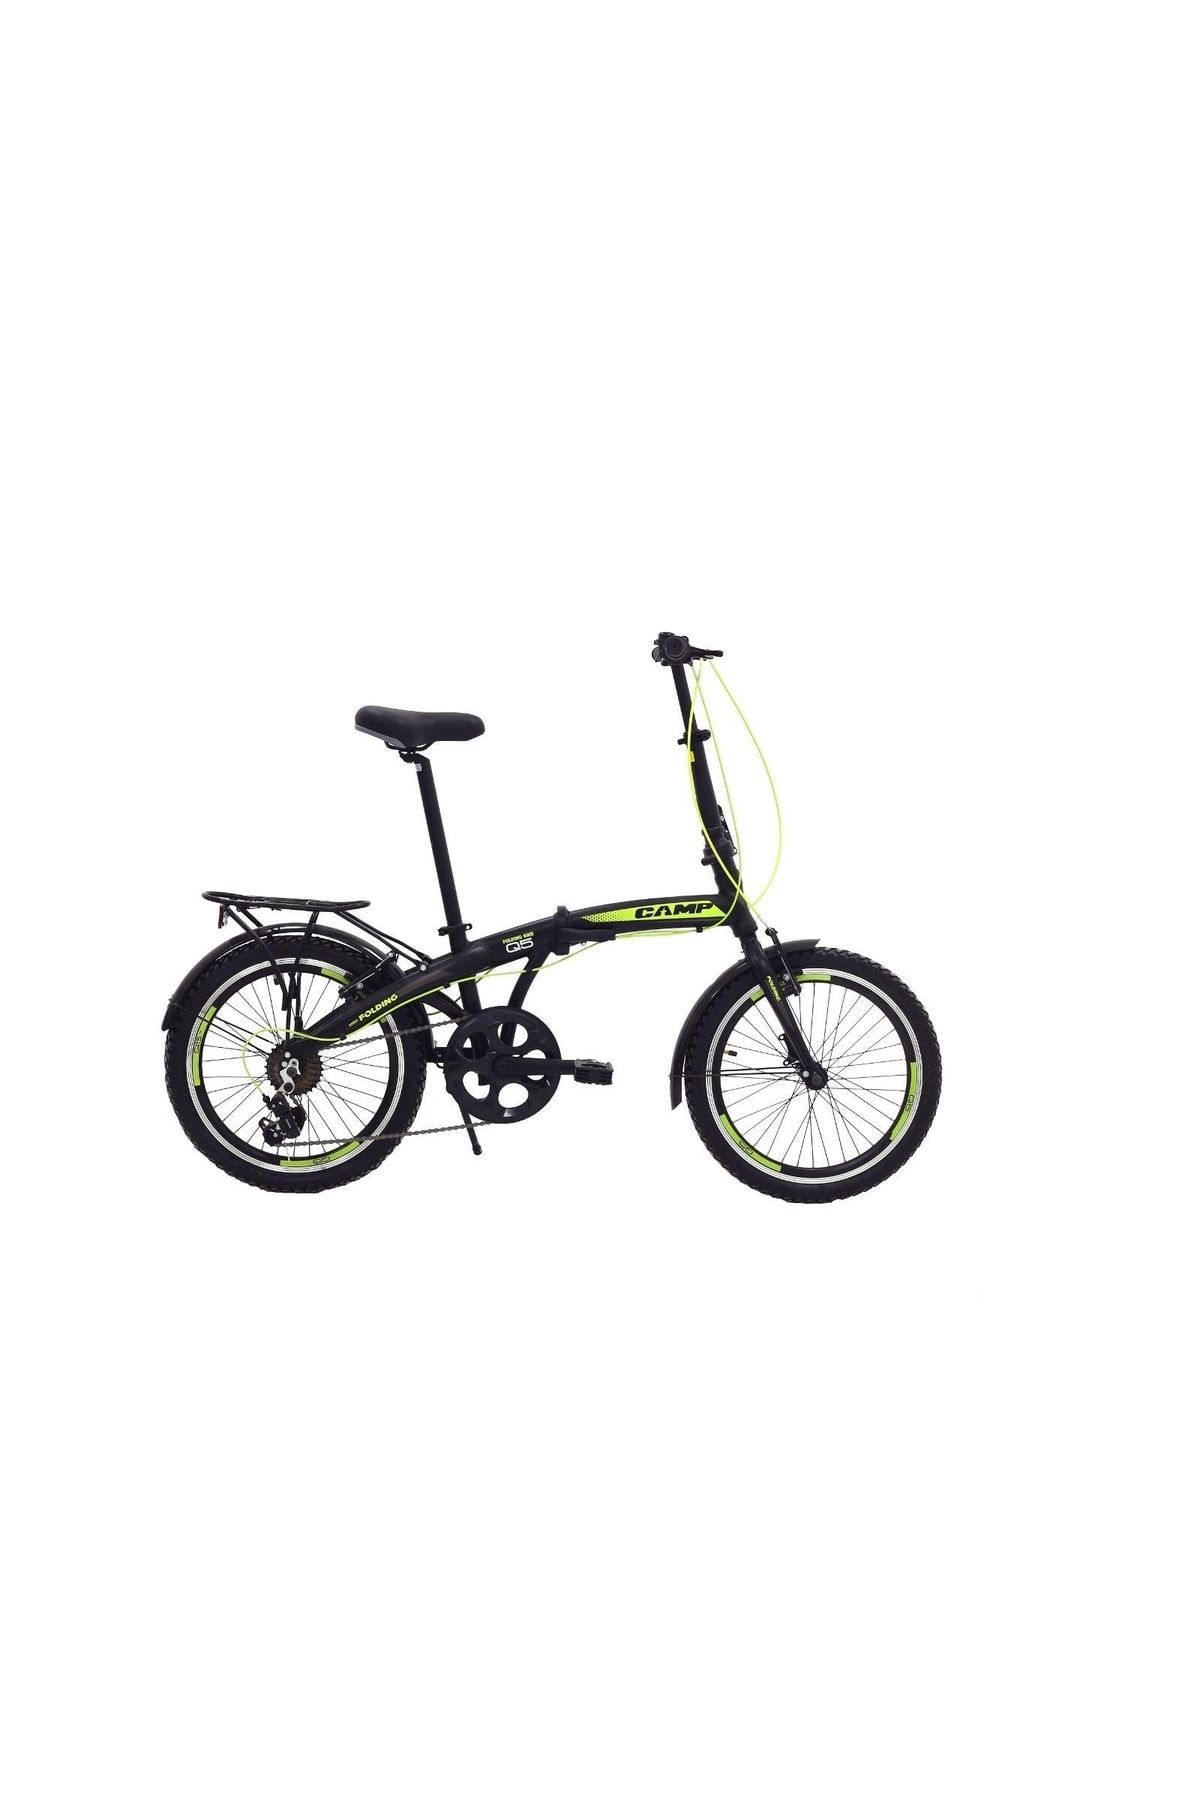 Belderia Camp Q5 20" Jant Shimano Microshift(7s) Vites V-fren Siyah Sarı Katlanabilir Bisiklet